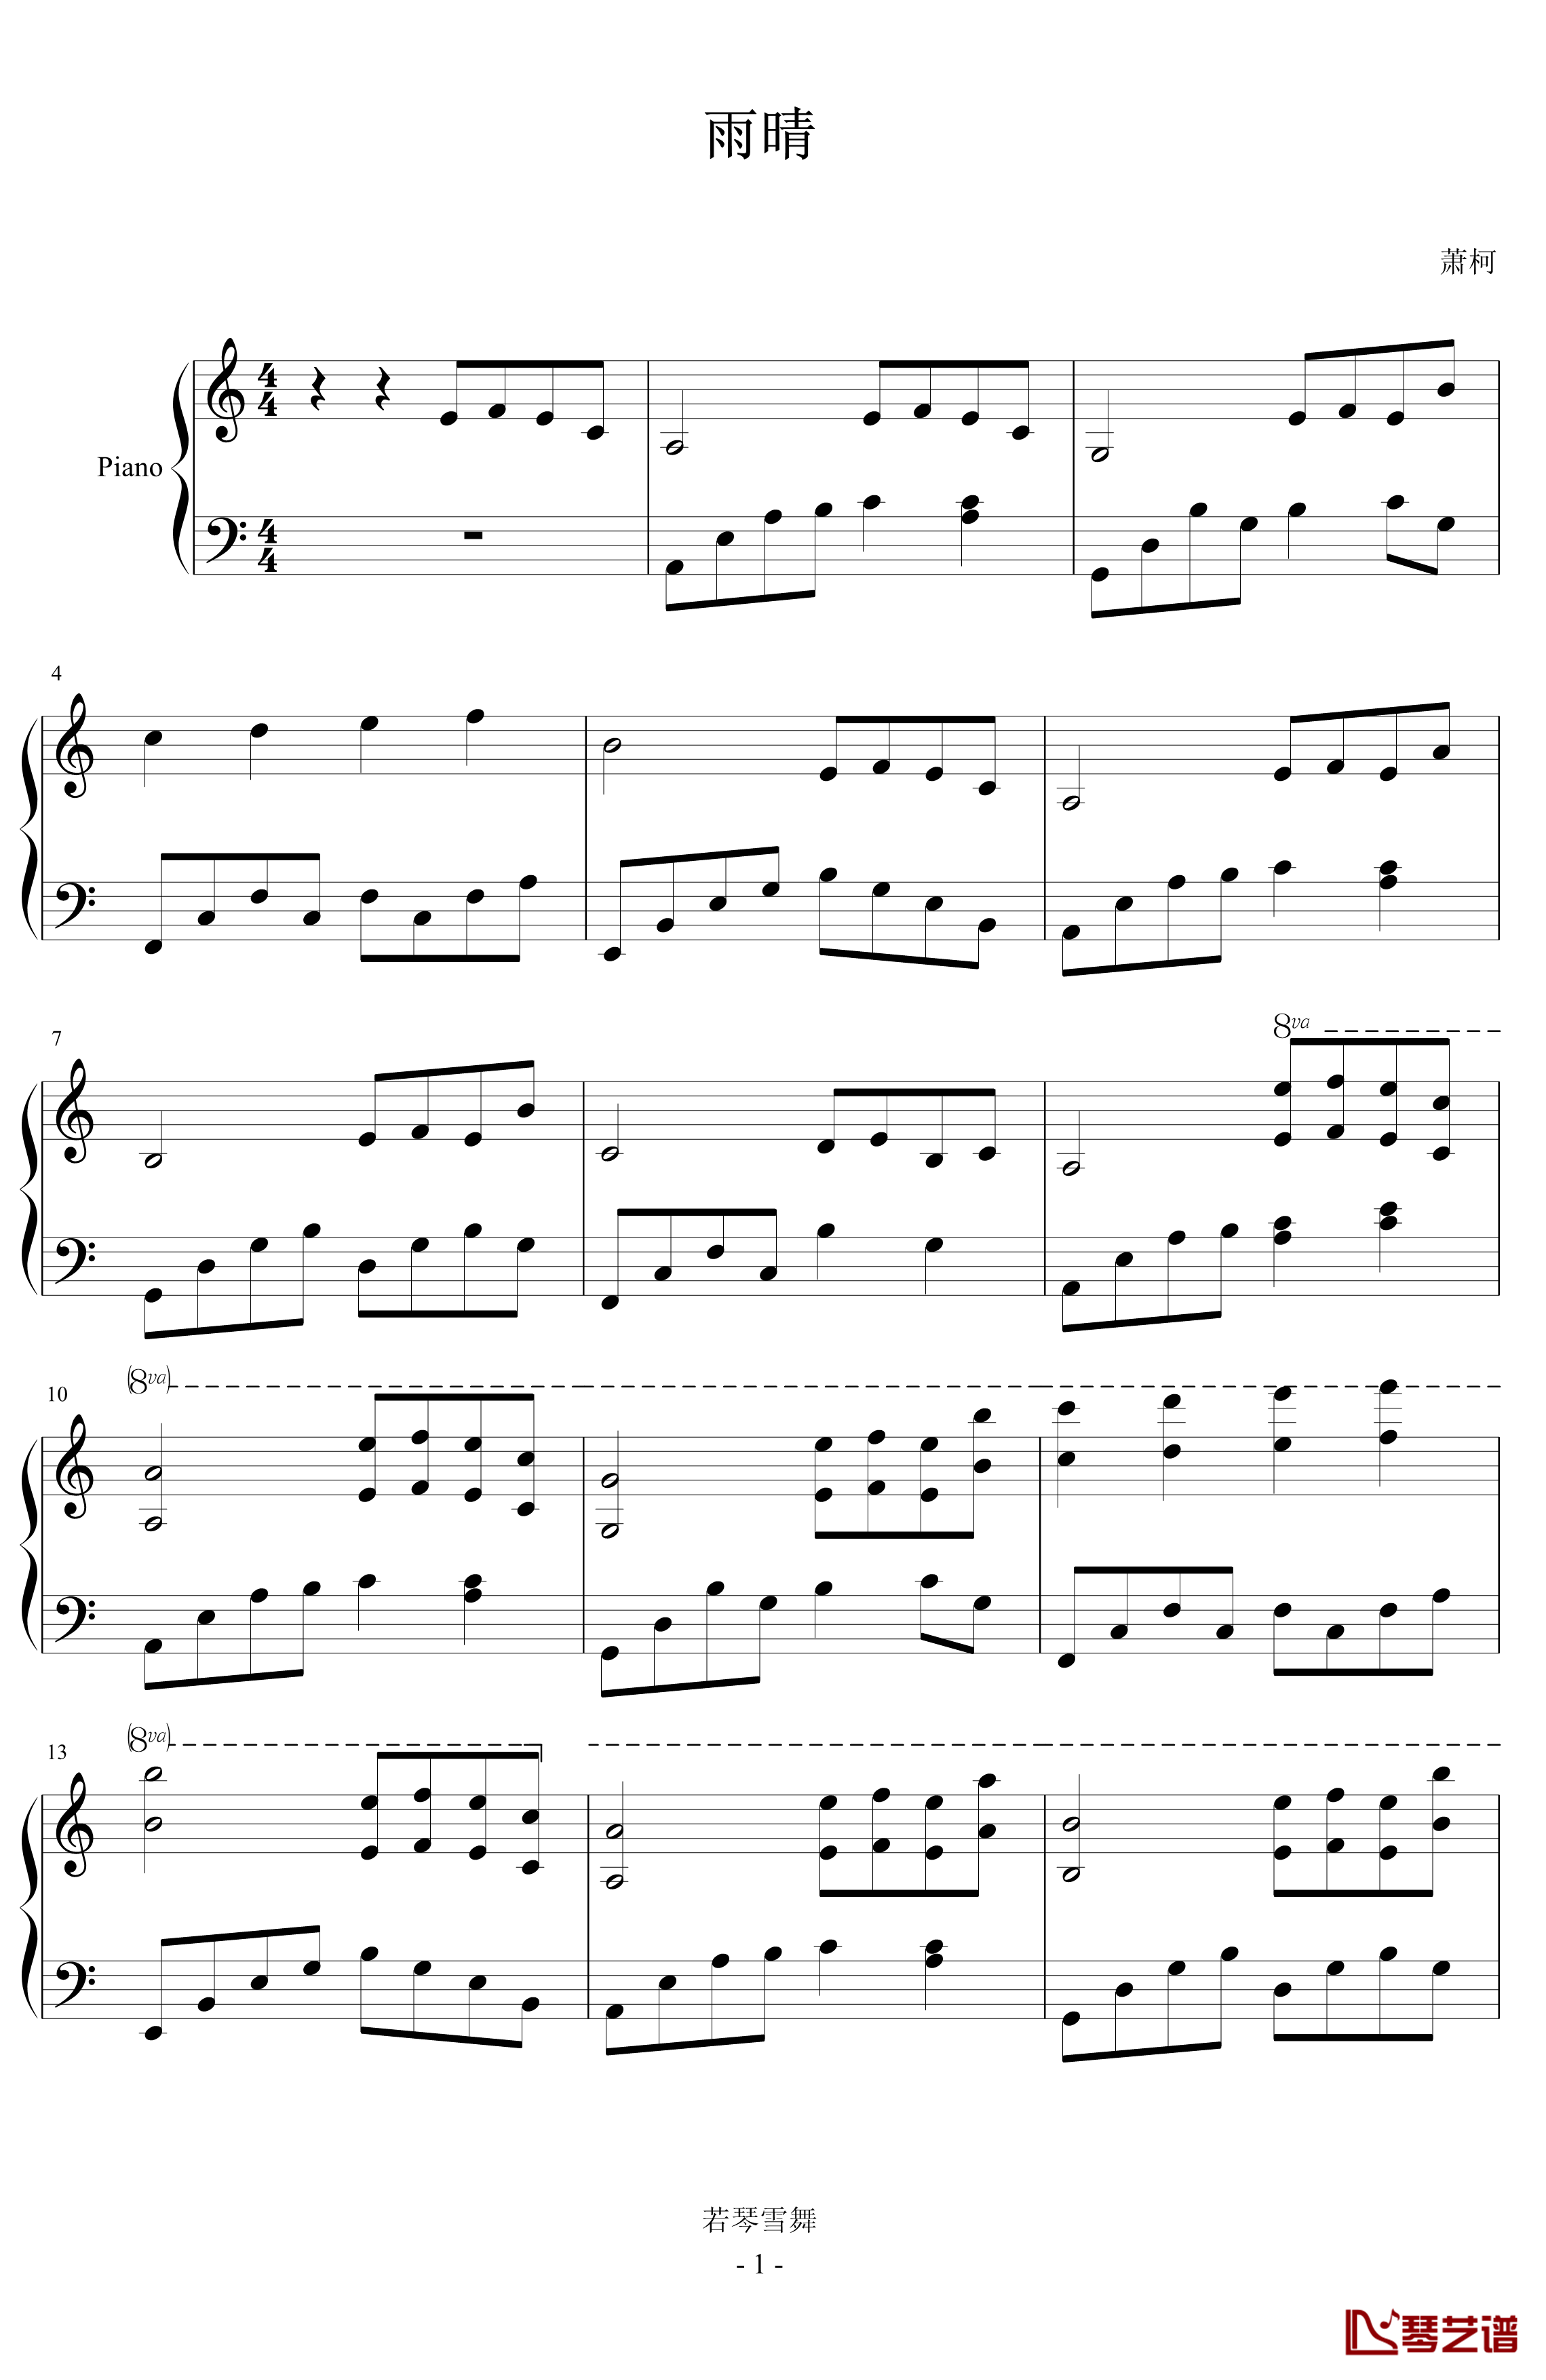 雨晴钢琴谱-Chopinist1